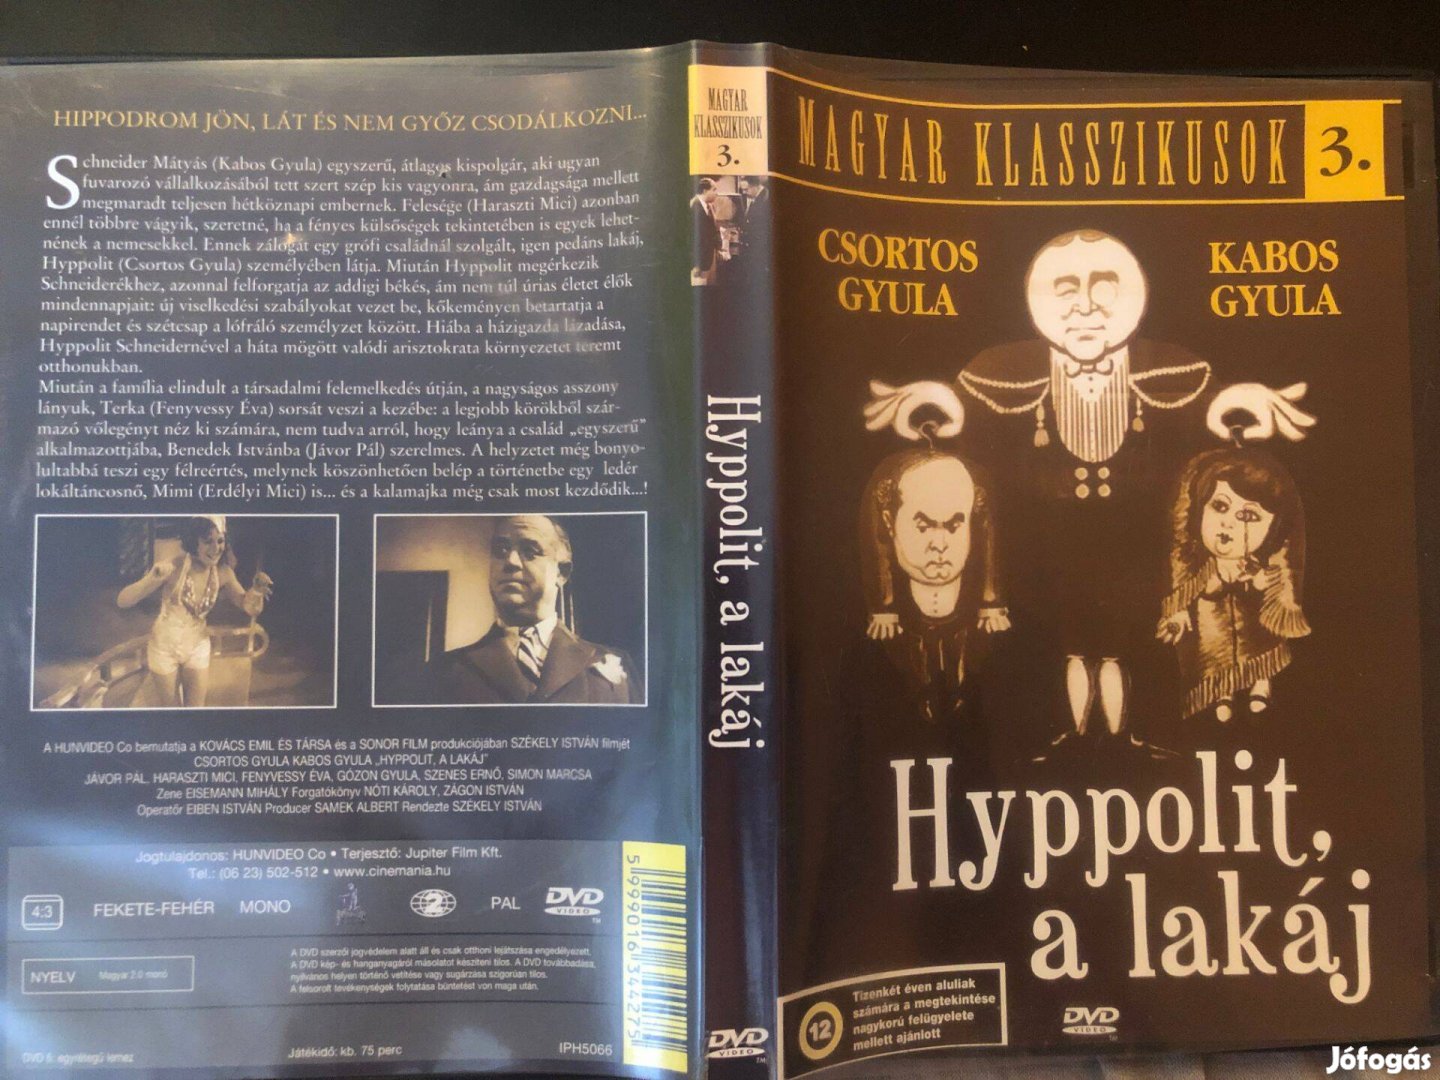 Hyppolit, a lakáj DVD Magyar klasszikusok 3. karcmentes, Kabos Gyula